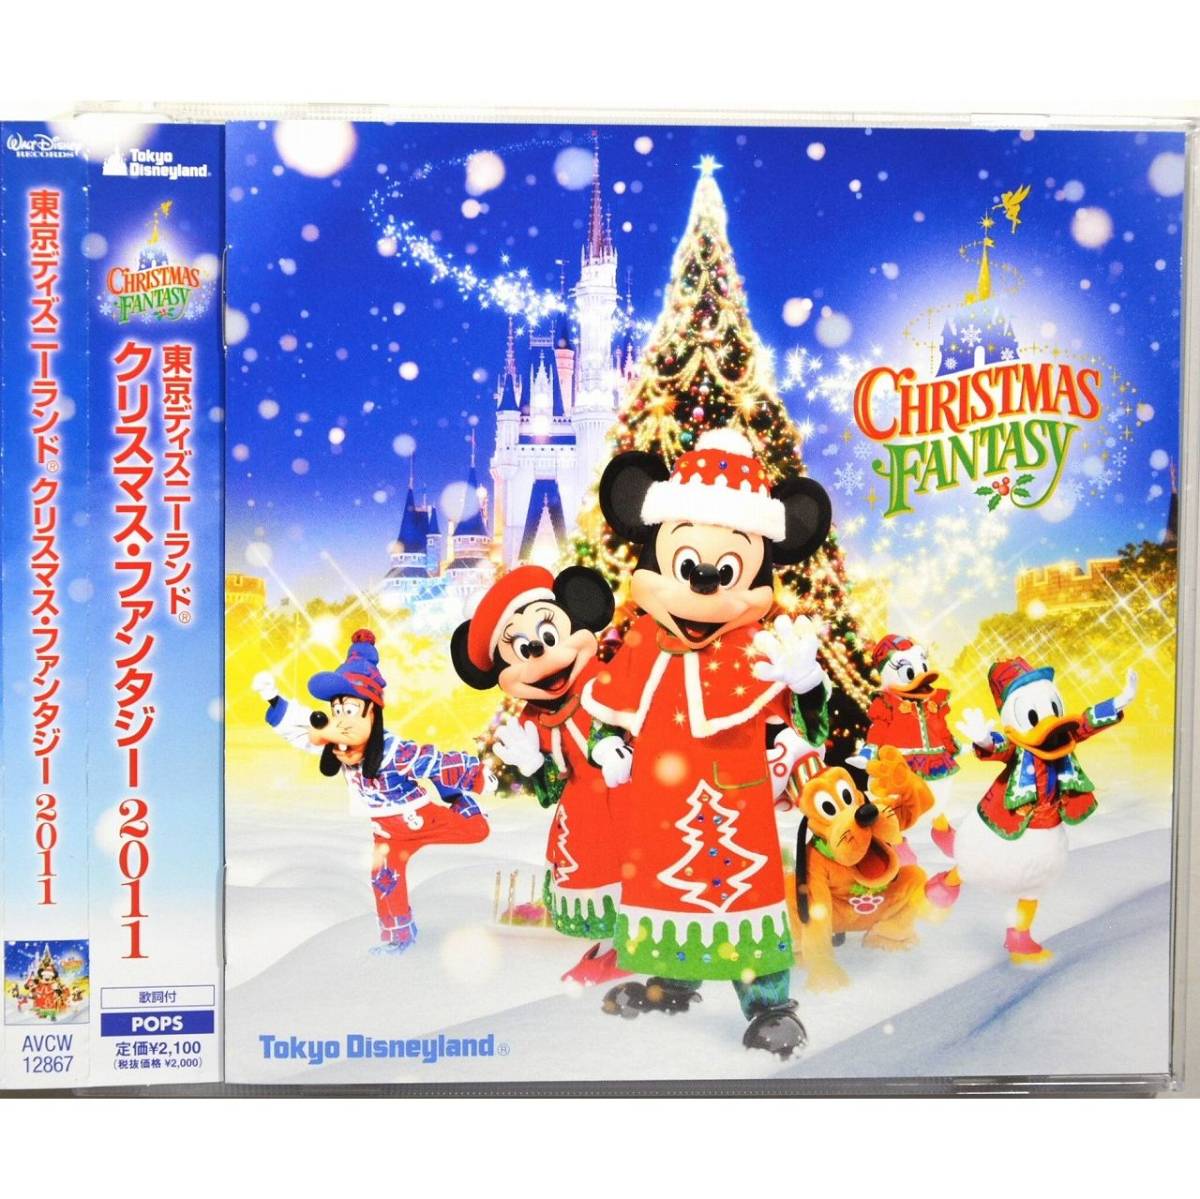 東京ディズニーランド ◇ クリスマス・ファンタジー 2011 ◇ Tokyo Disneyland / Christmas Fantasy 2011 ◇ 国内盤帯付 ◇_画像1